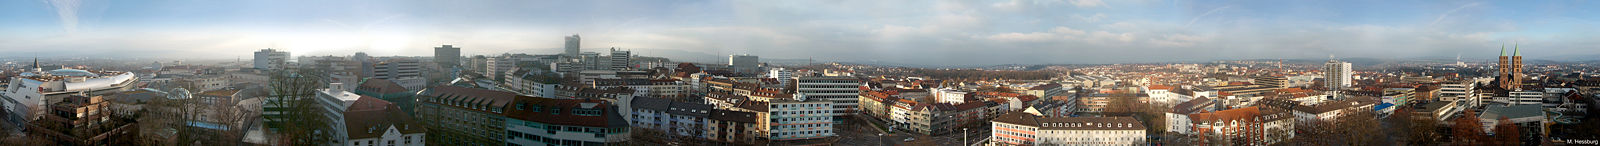 360°-Panorama - aufgenommen vom Turm der Lutherkirche